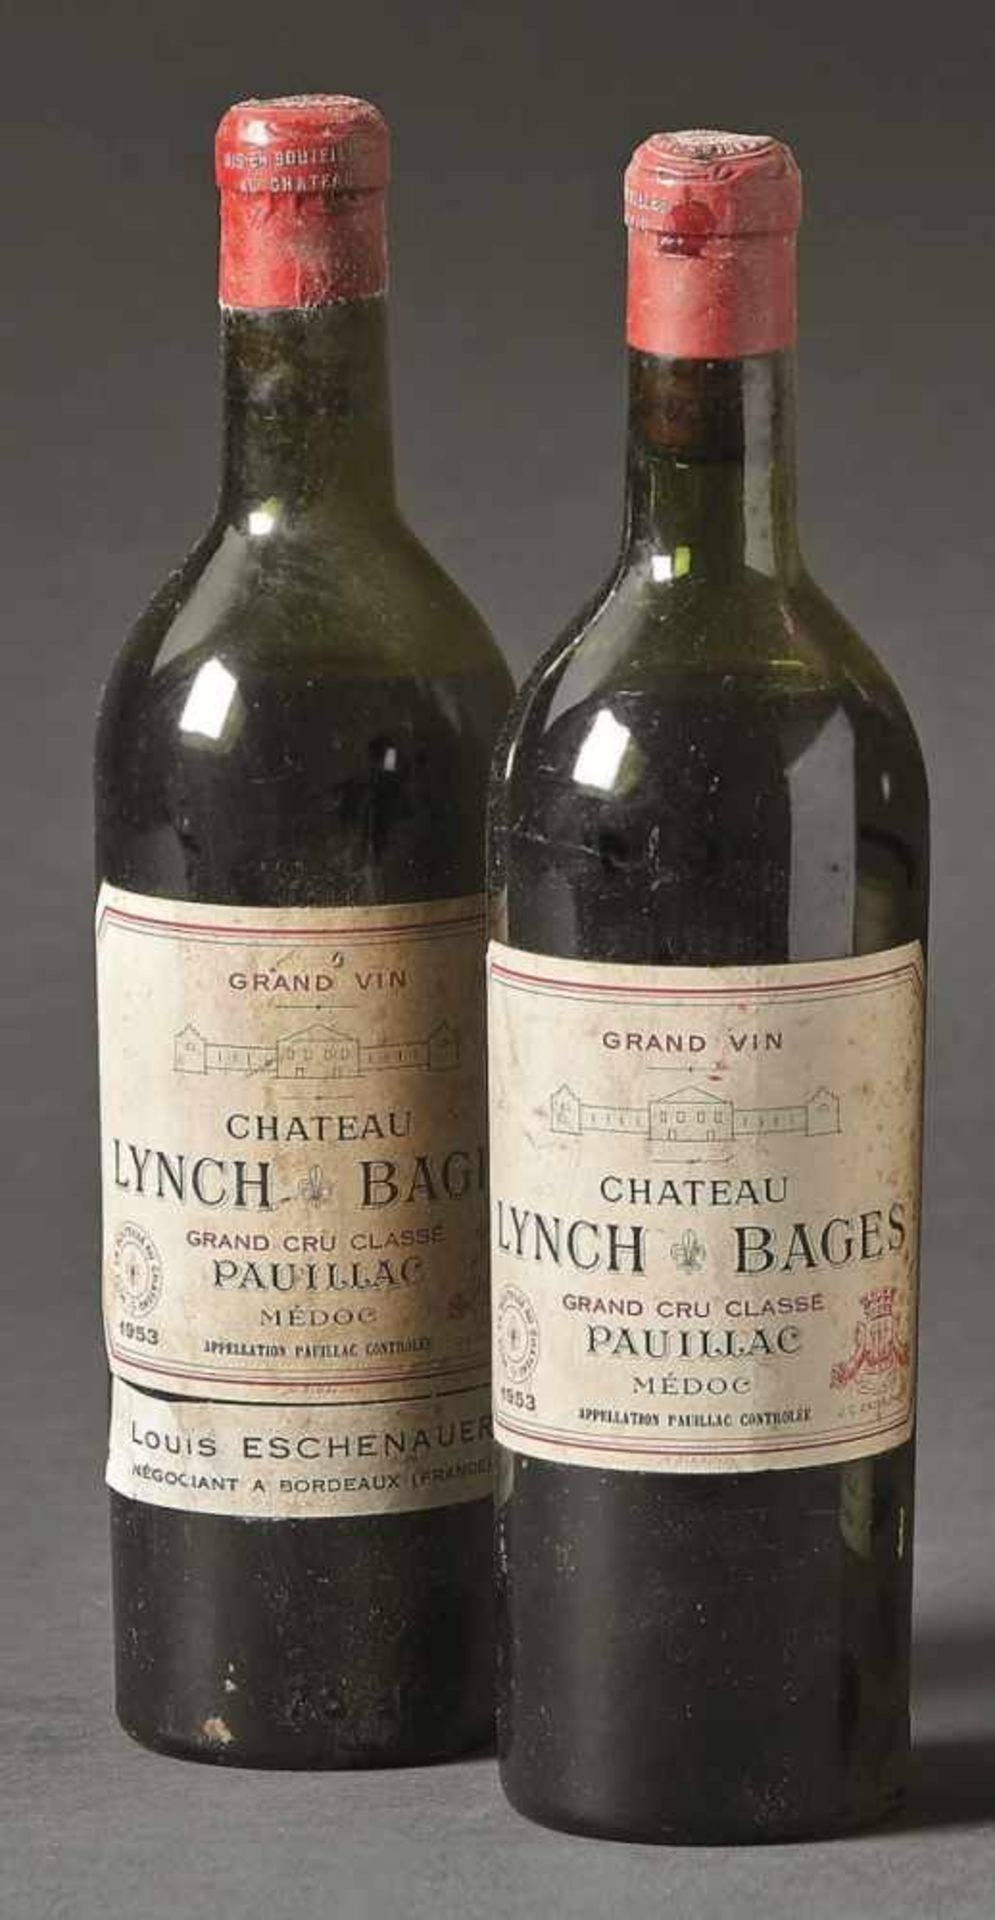 Château Lynch BagesPauillacZwei Flaschen Grand Vin von 1953, rote Kapseln. - Verschmutzt,